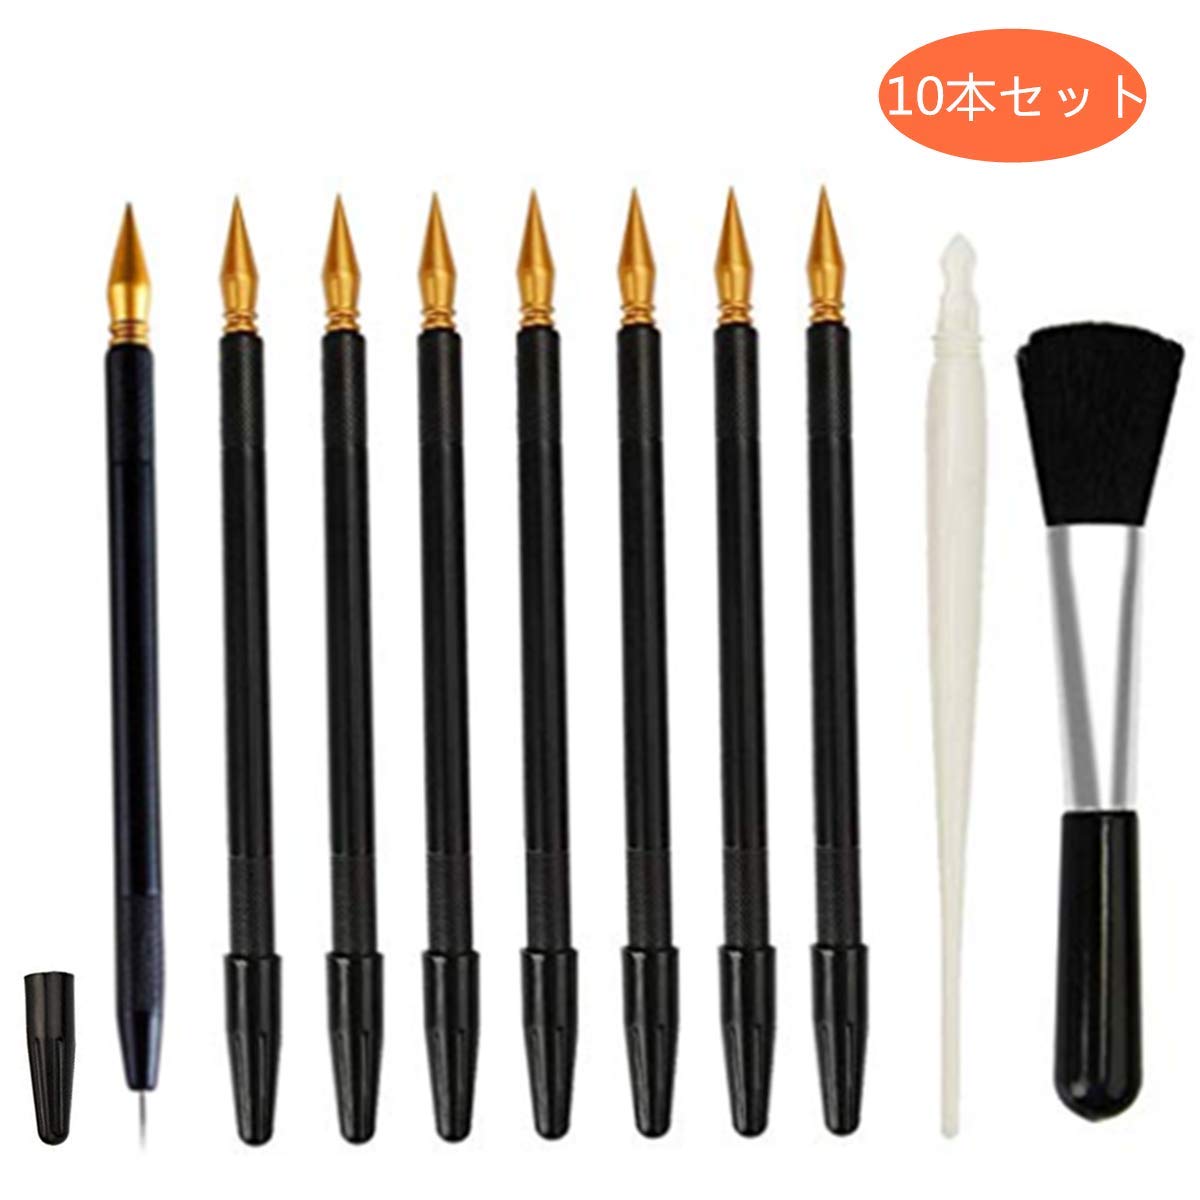 スクラッチ専用道具大流行のスクラッチアート用スクラッチペンのセットです。スクラッチアートを楽しんでいる人にに最適です。 セット内容黒ペン8本（太ペン、細ペンの2wayで使用できる）白ペン1本（大面積のところを削る時に適用する）刷毛1本。 商品詳細材質：プラスチック サイズ：黒ペン：16.8cm、白ペン：13.8cm、刷毛：12.2cmご注意ペン先が尖っていますので、小さなお子様がお手を触れないようご注意ください。使用しないときは極細のペン先にはキャップをしてください。 使い方黒ペンは両端使用可能です。細と極細2種類の太さを持ちます。白ペンは黒ペンよりもっと太く、大面積のところを削る時に役に立ちます。刷毛は柔らかい素材です。細かい削りカスを簡単にきれいにするので作業がしやすくなります。 初心者としてもとても使いやすいです。初心者の練習用に最適です。